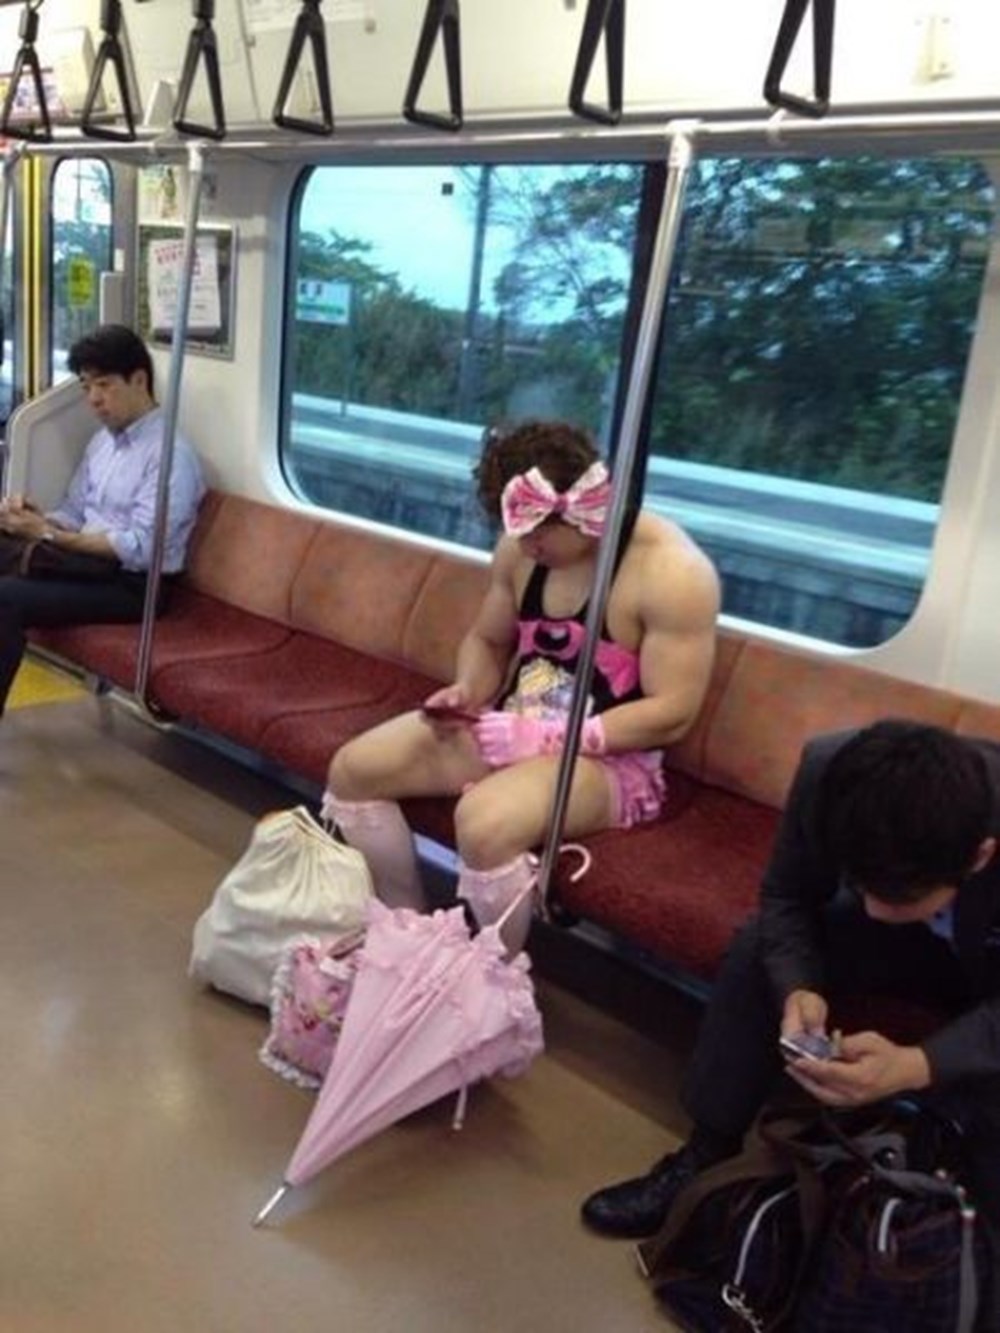 Извращенец в метро. Японки в общественном транспорте. Извращенцы в метро Японии. Японские девушки в общественном транспорте. Японки в общественном месте.